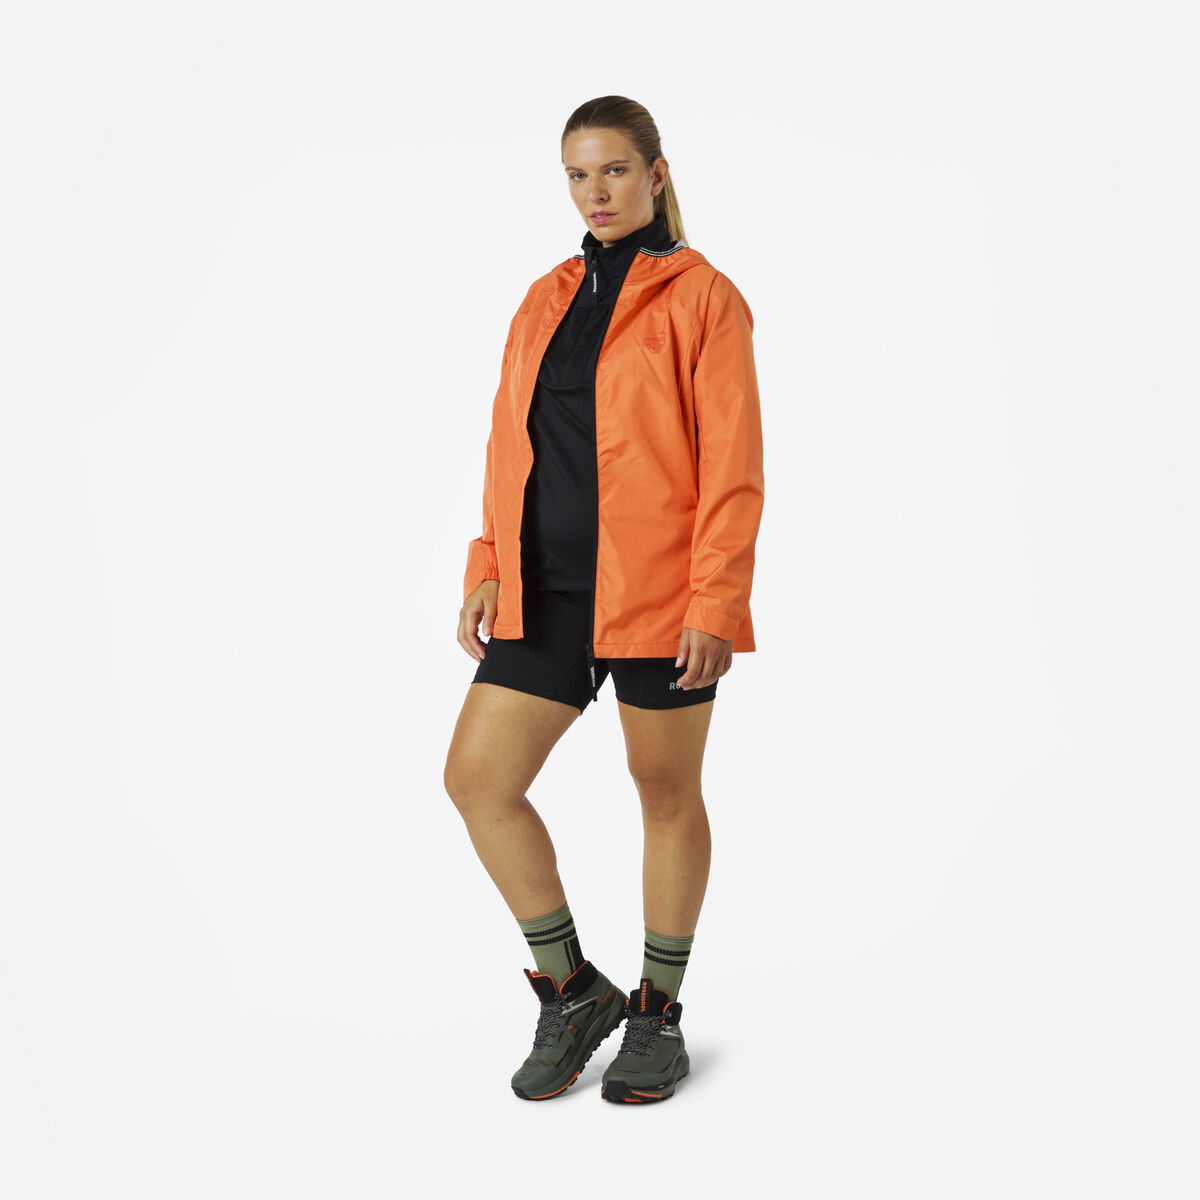 Rossignol Women's Active Rain Jacket Orange